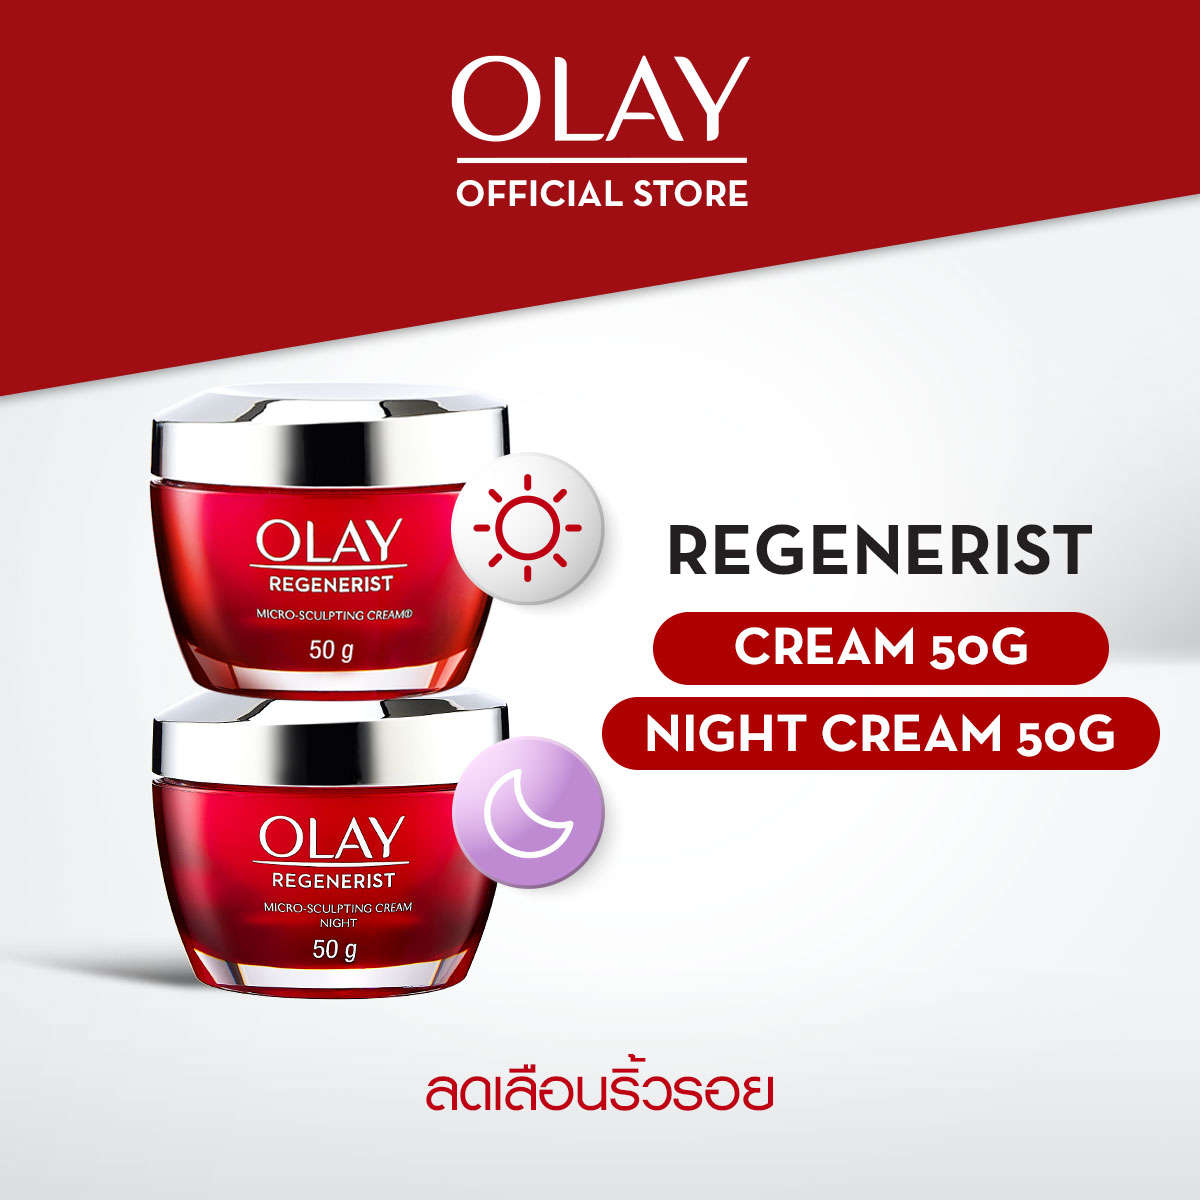 [ขายดีอันดับ 1] Olay Regenerist Day+Night Cream โอเลย์ รีเจนเนอรีส ครีม เดย์ + ไนท์ แพ็คคู่ ไมโคร-สกัลป์ติ้ง 50+50 กรัม.